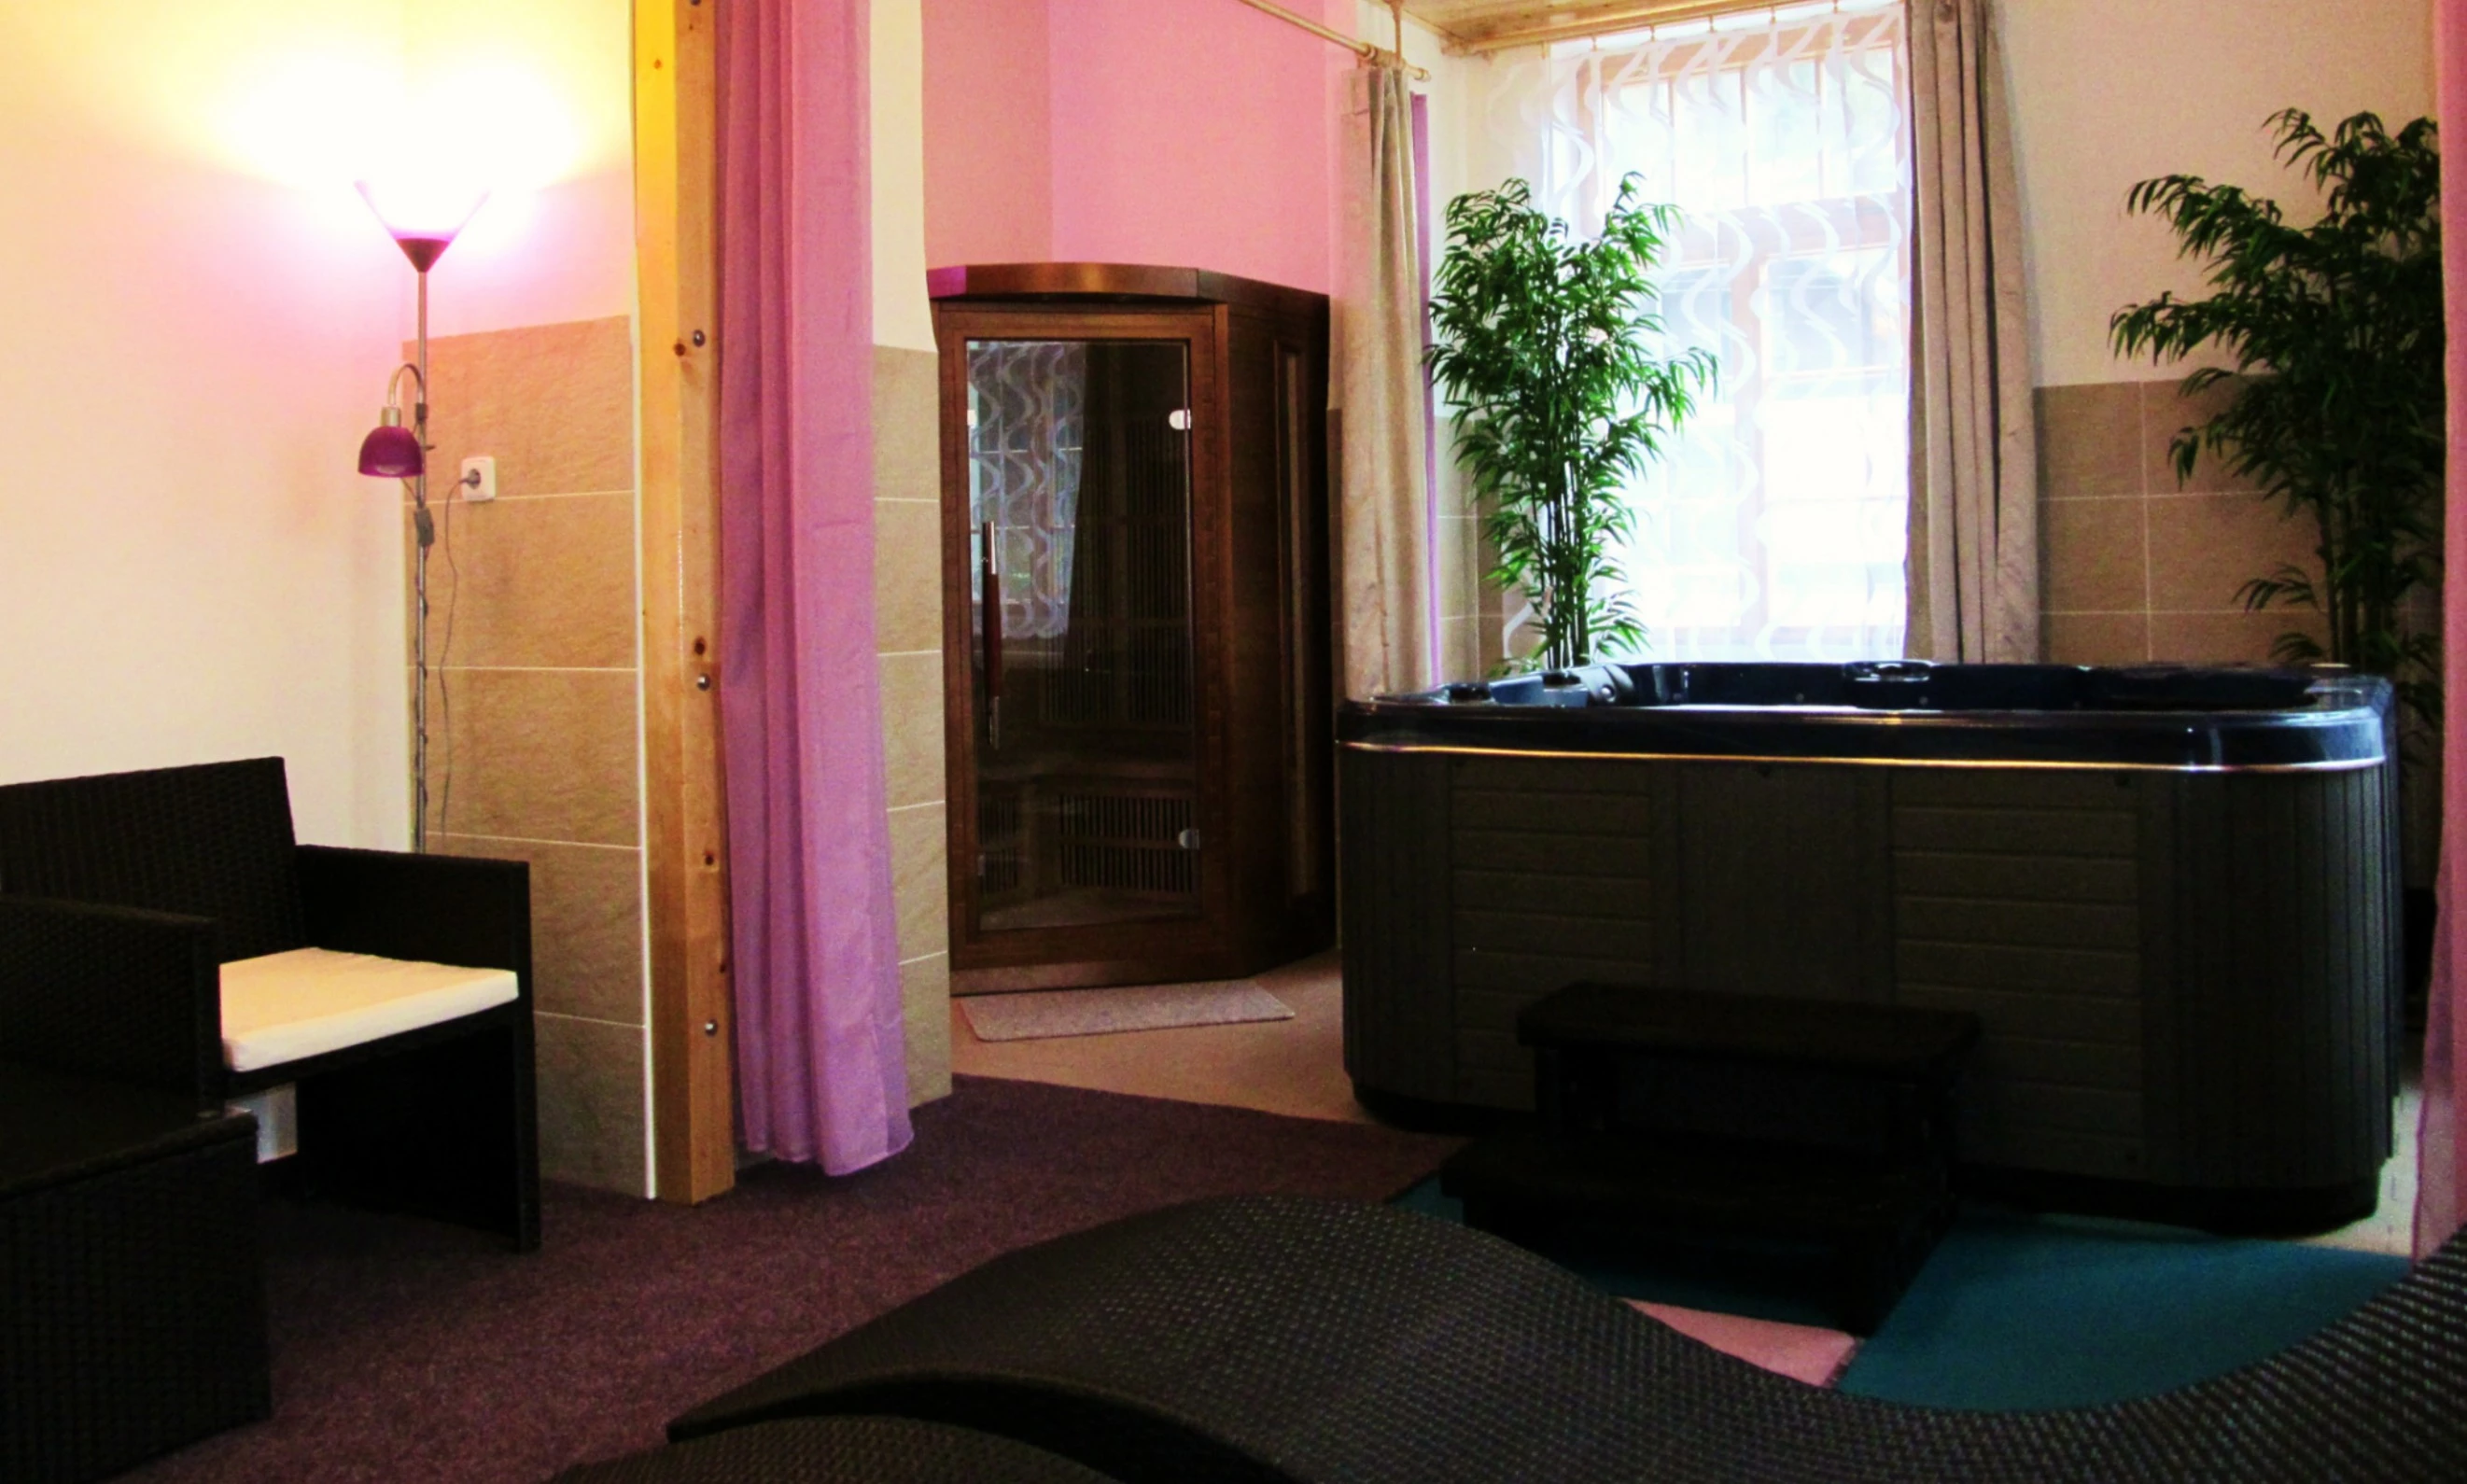 Ubytování Český ráj, hotel Starý mlýn, interiér, wellness - vířivá vana a sauna